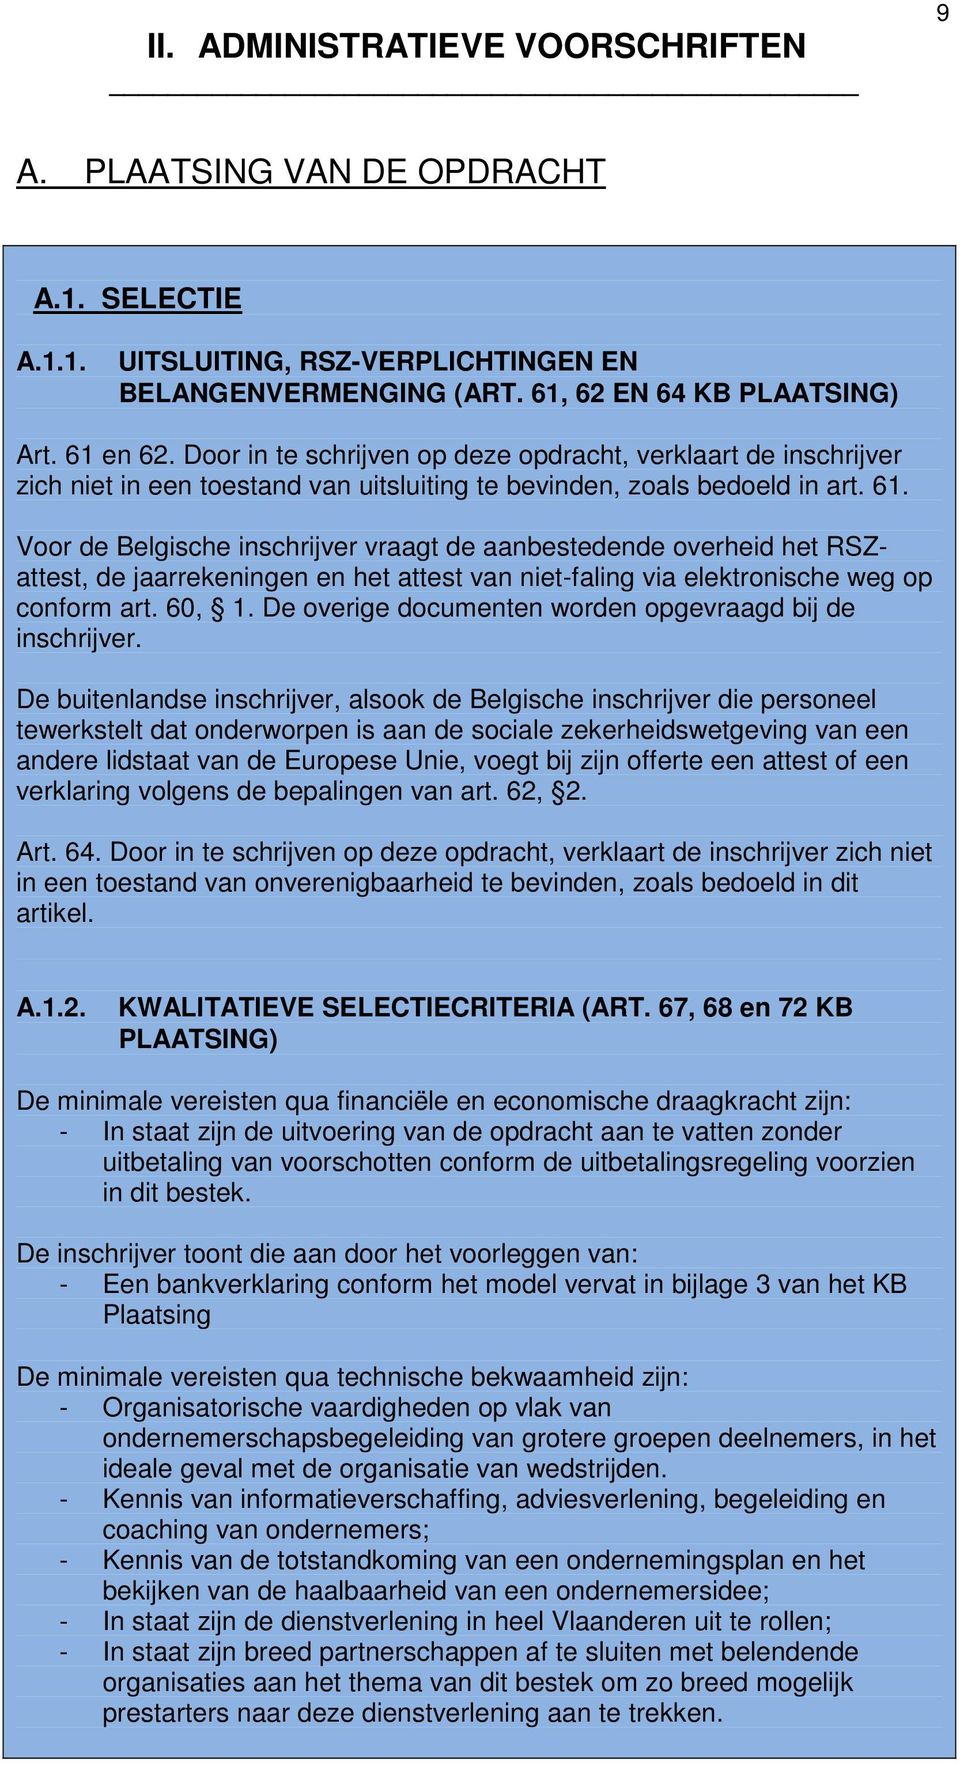 Voor de Belgische inschrijver vraagt de aanbestedende overheid het RSZattest, de jaarrekeningen en het attest van niet-faling via elektronische weg op conform art. 60, 1.